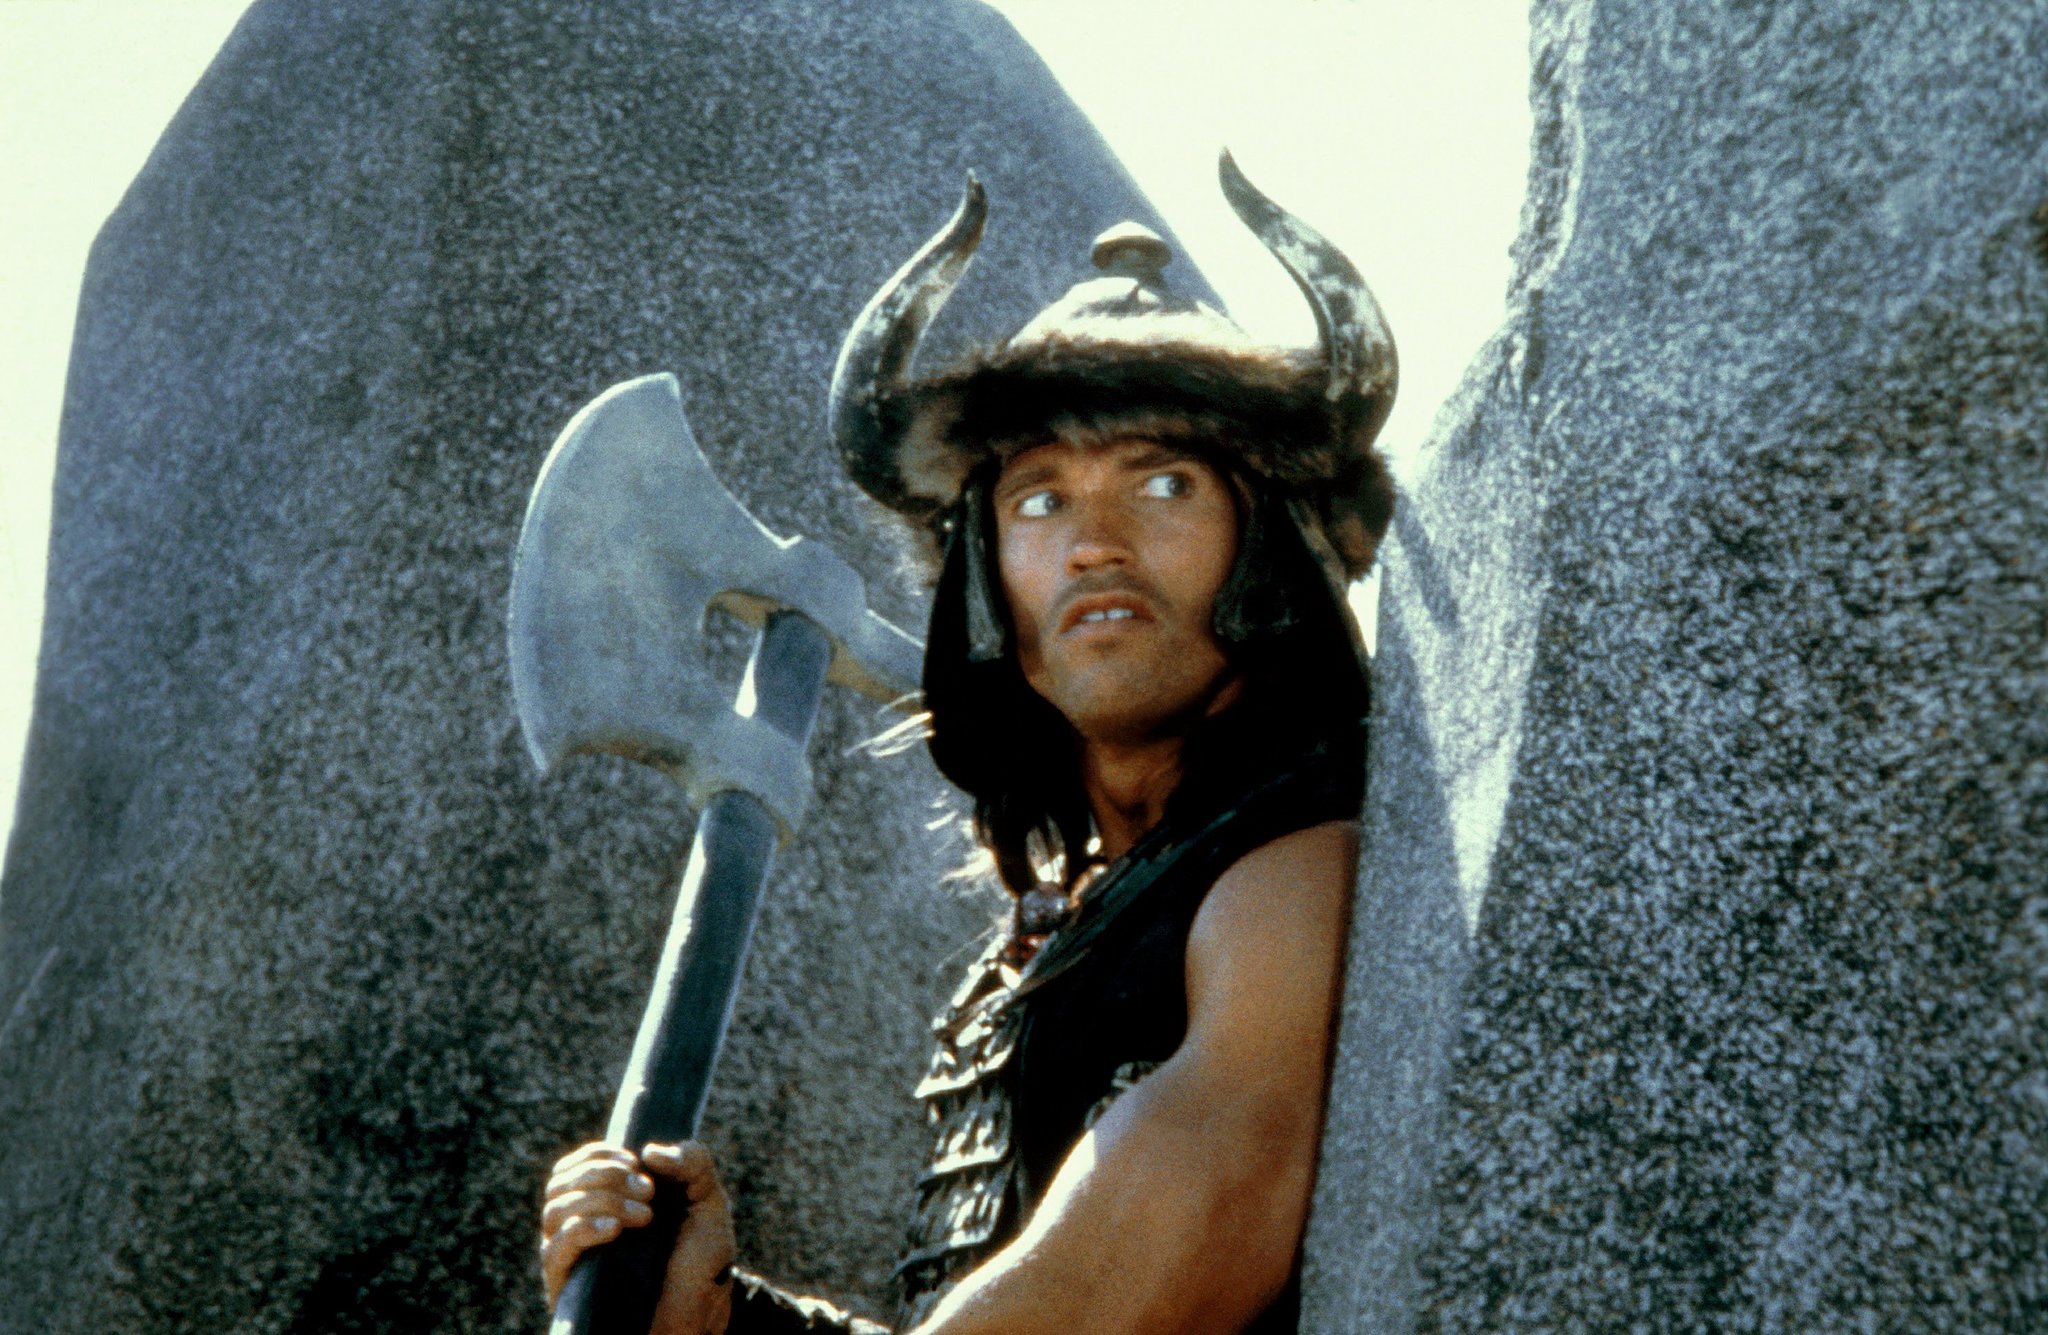 Conan the Barbarian (1982) Screenshot 1 